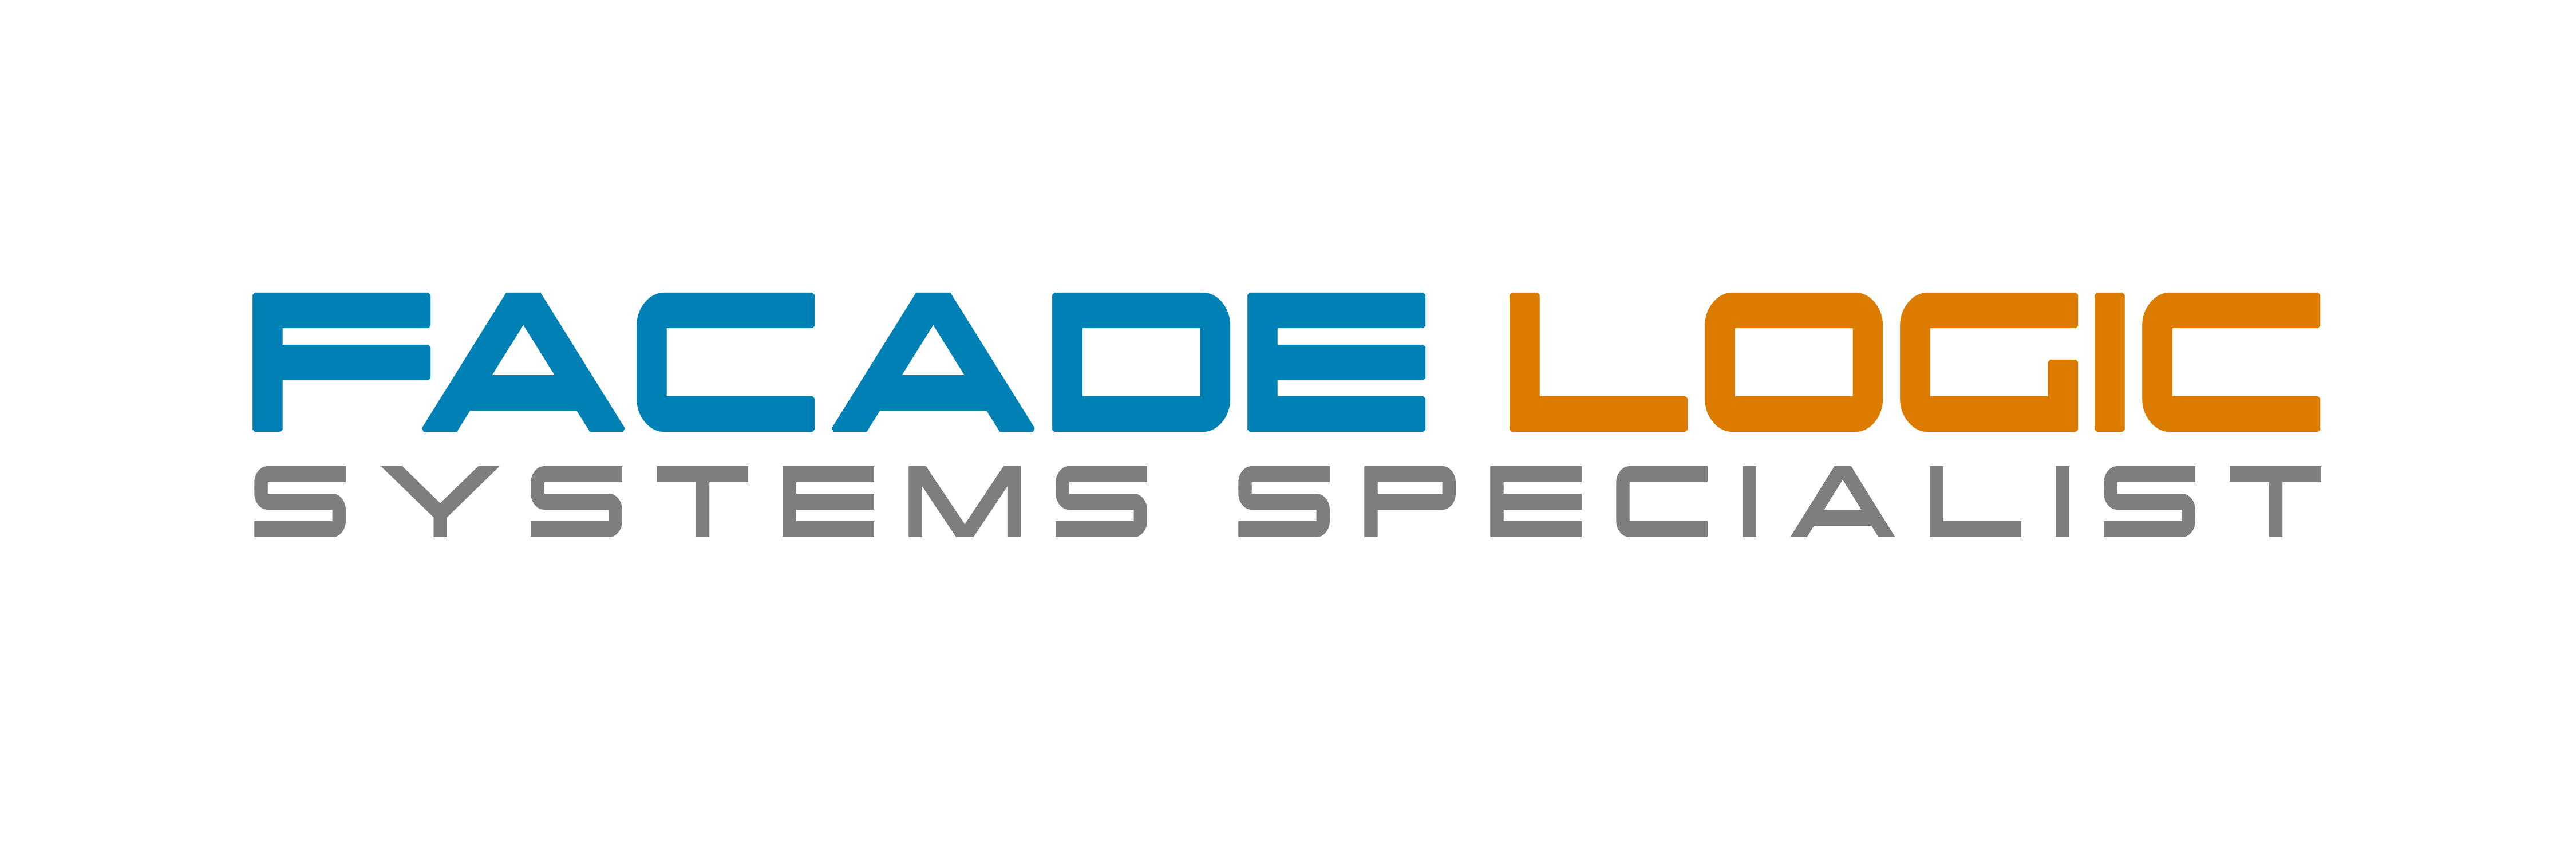 Facade Logic Pte. Ltd. logo